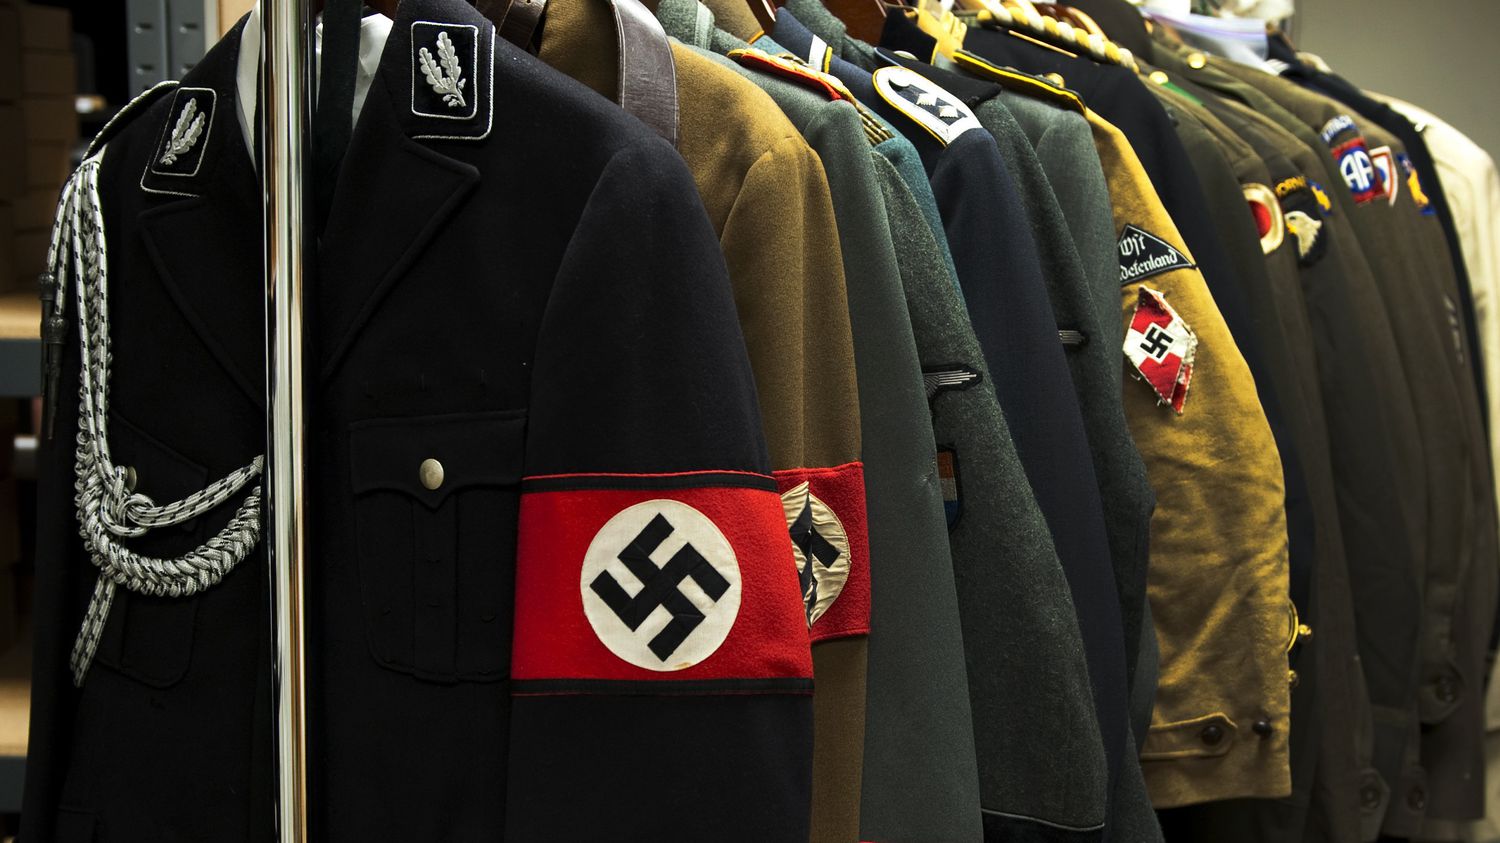 une vente aux enchères d'objets nazis annulée